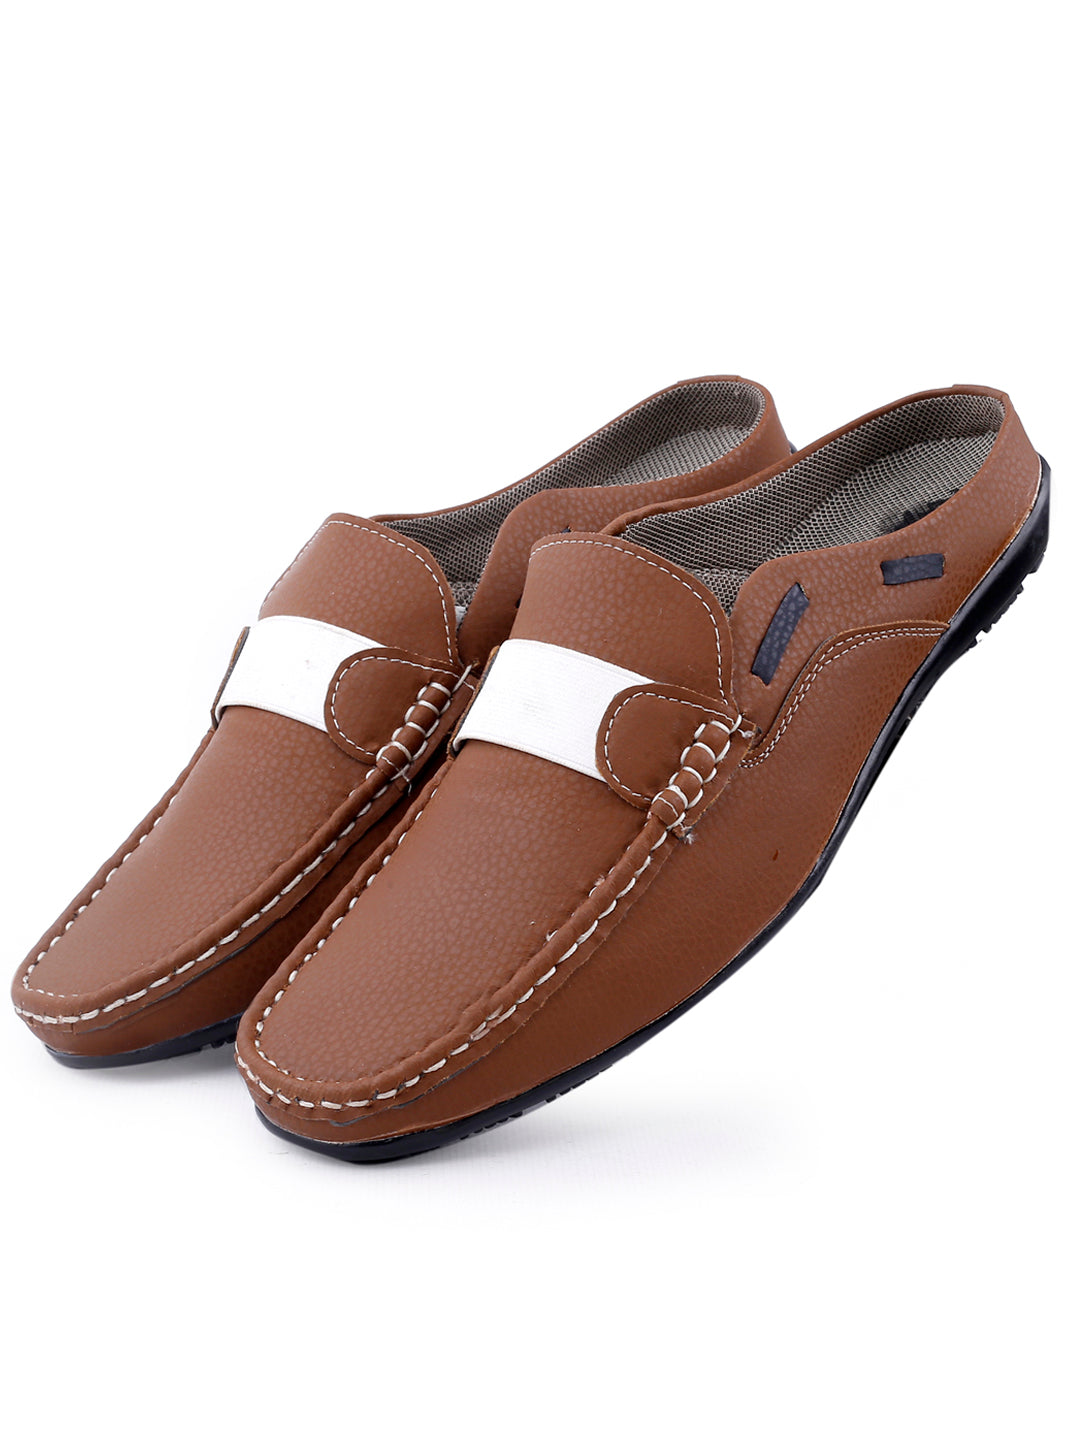 Woakers Mens Comfort Shoes  MULES-TAN